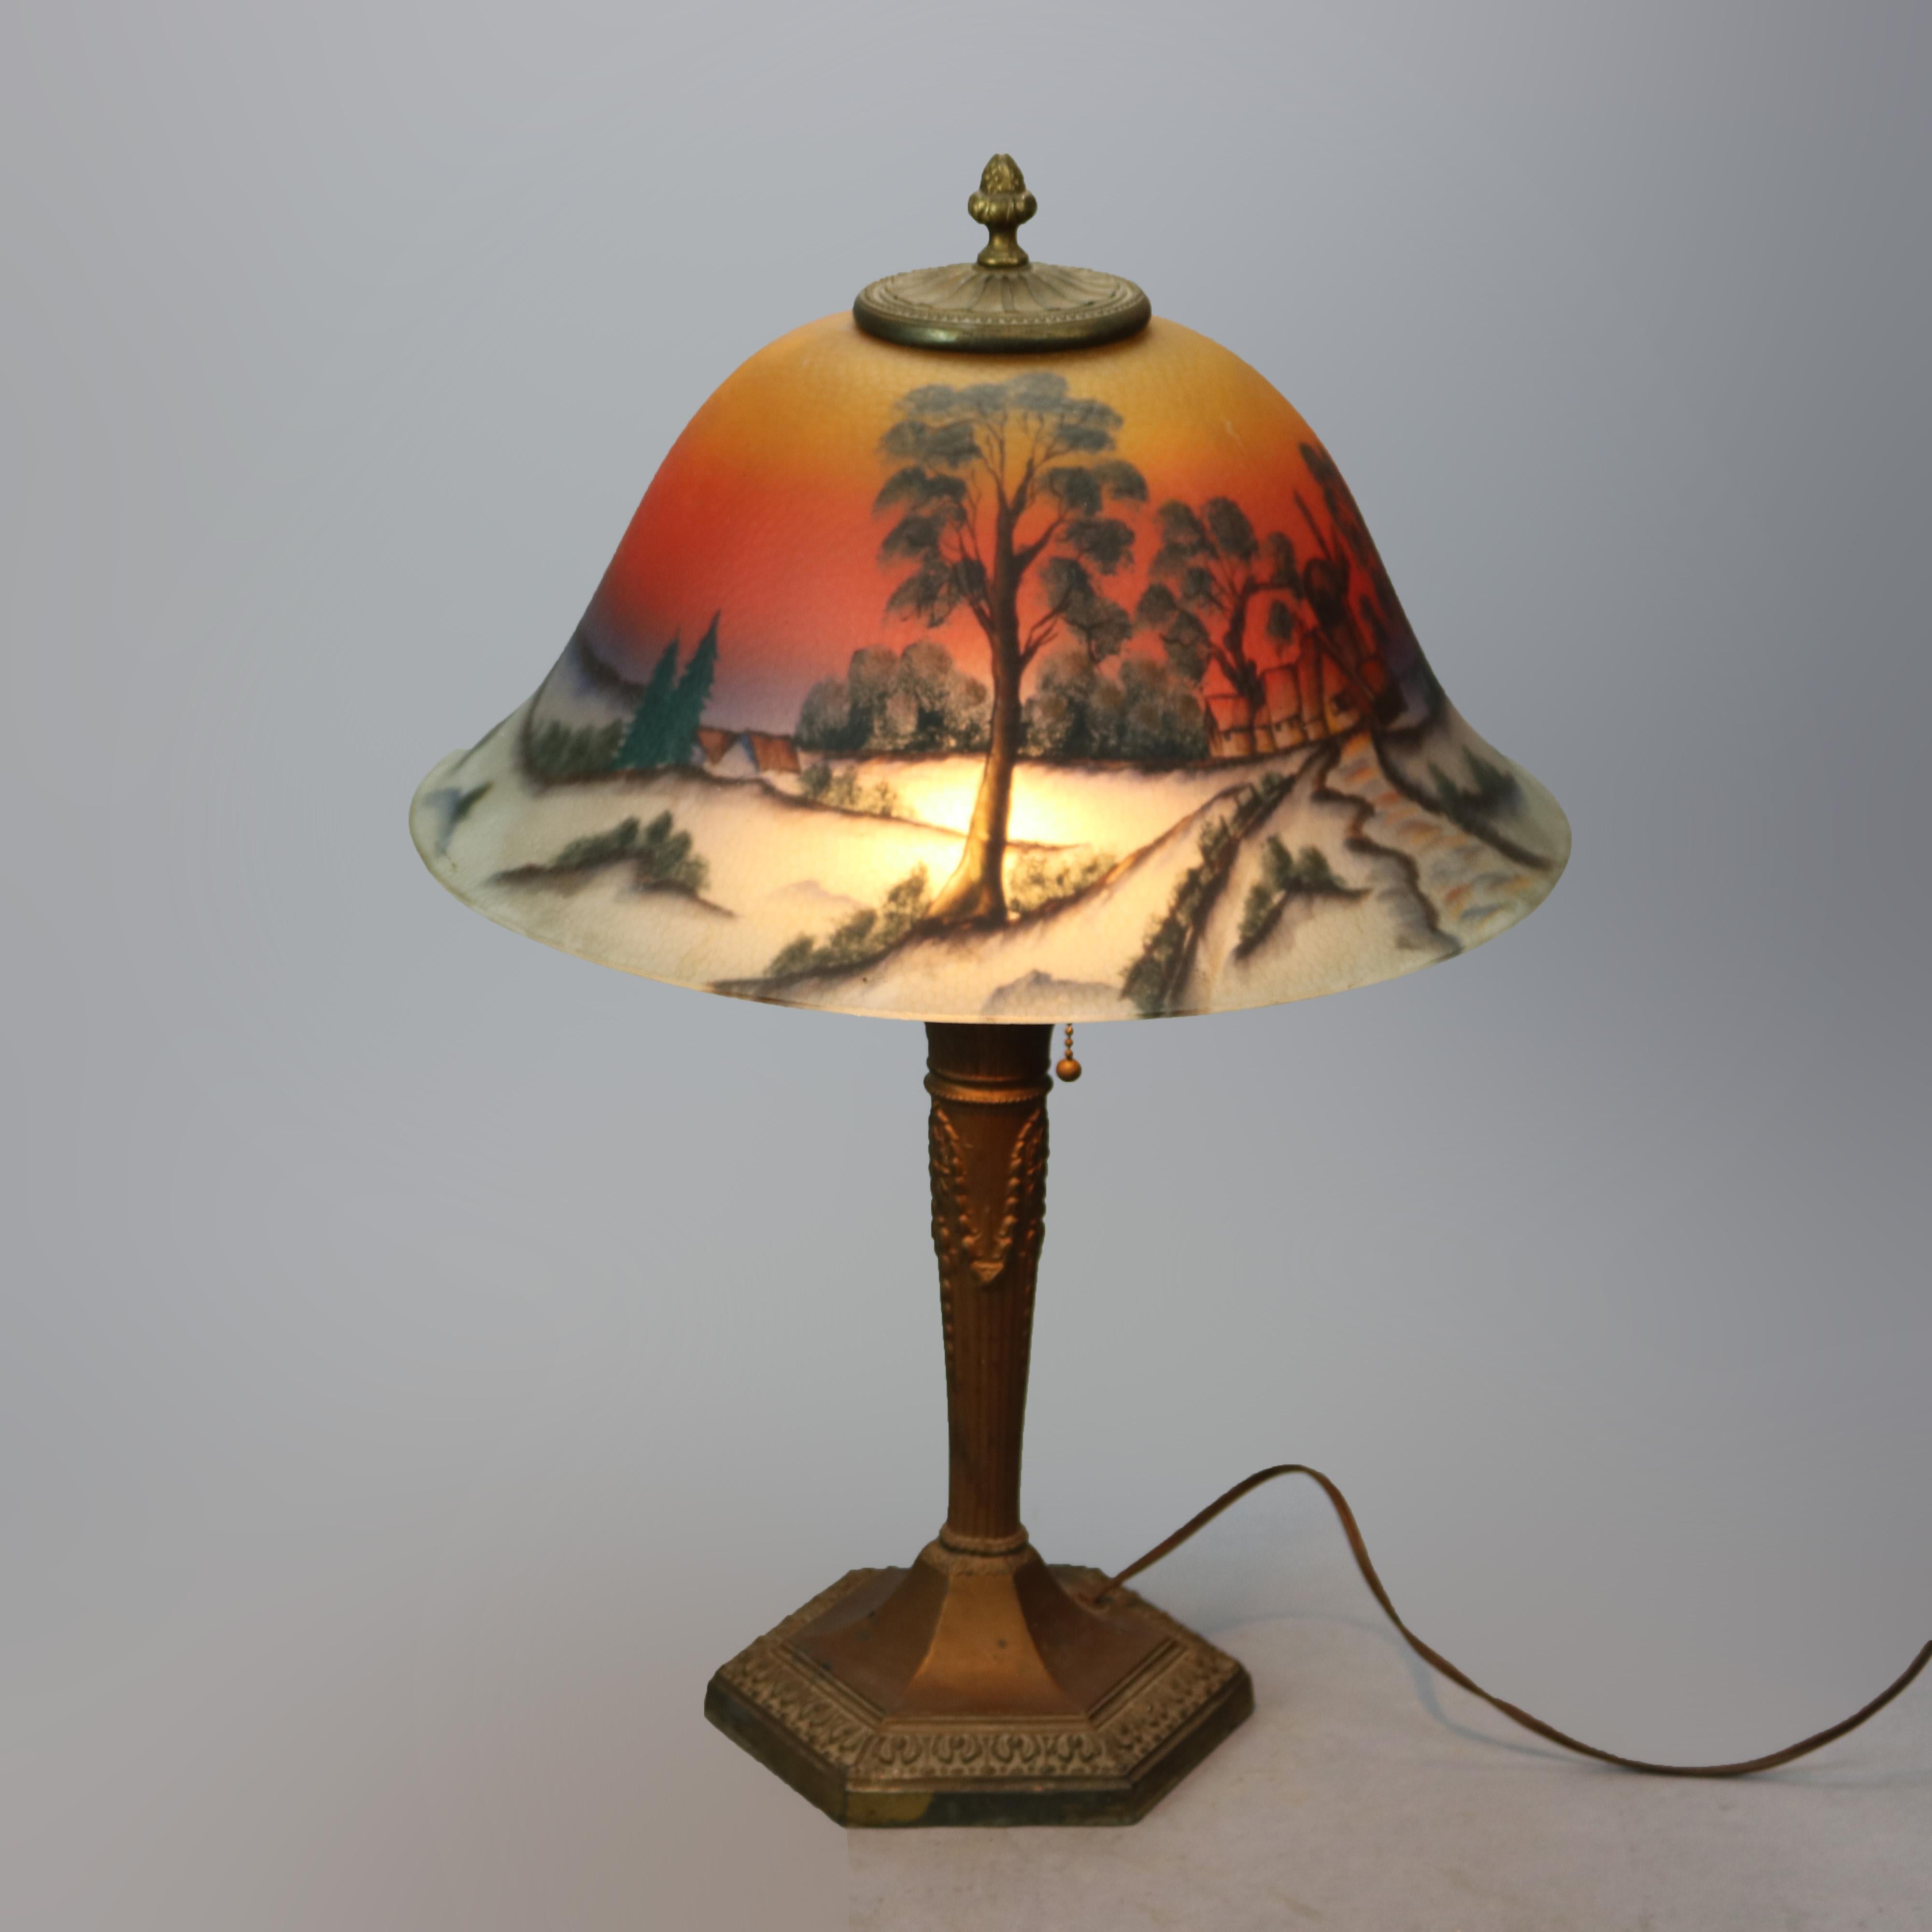 American Antique Arts & Crafts Phoenix Reverse Painted Lamp, Landscape, c1920